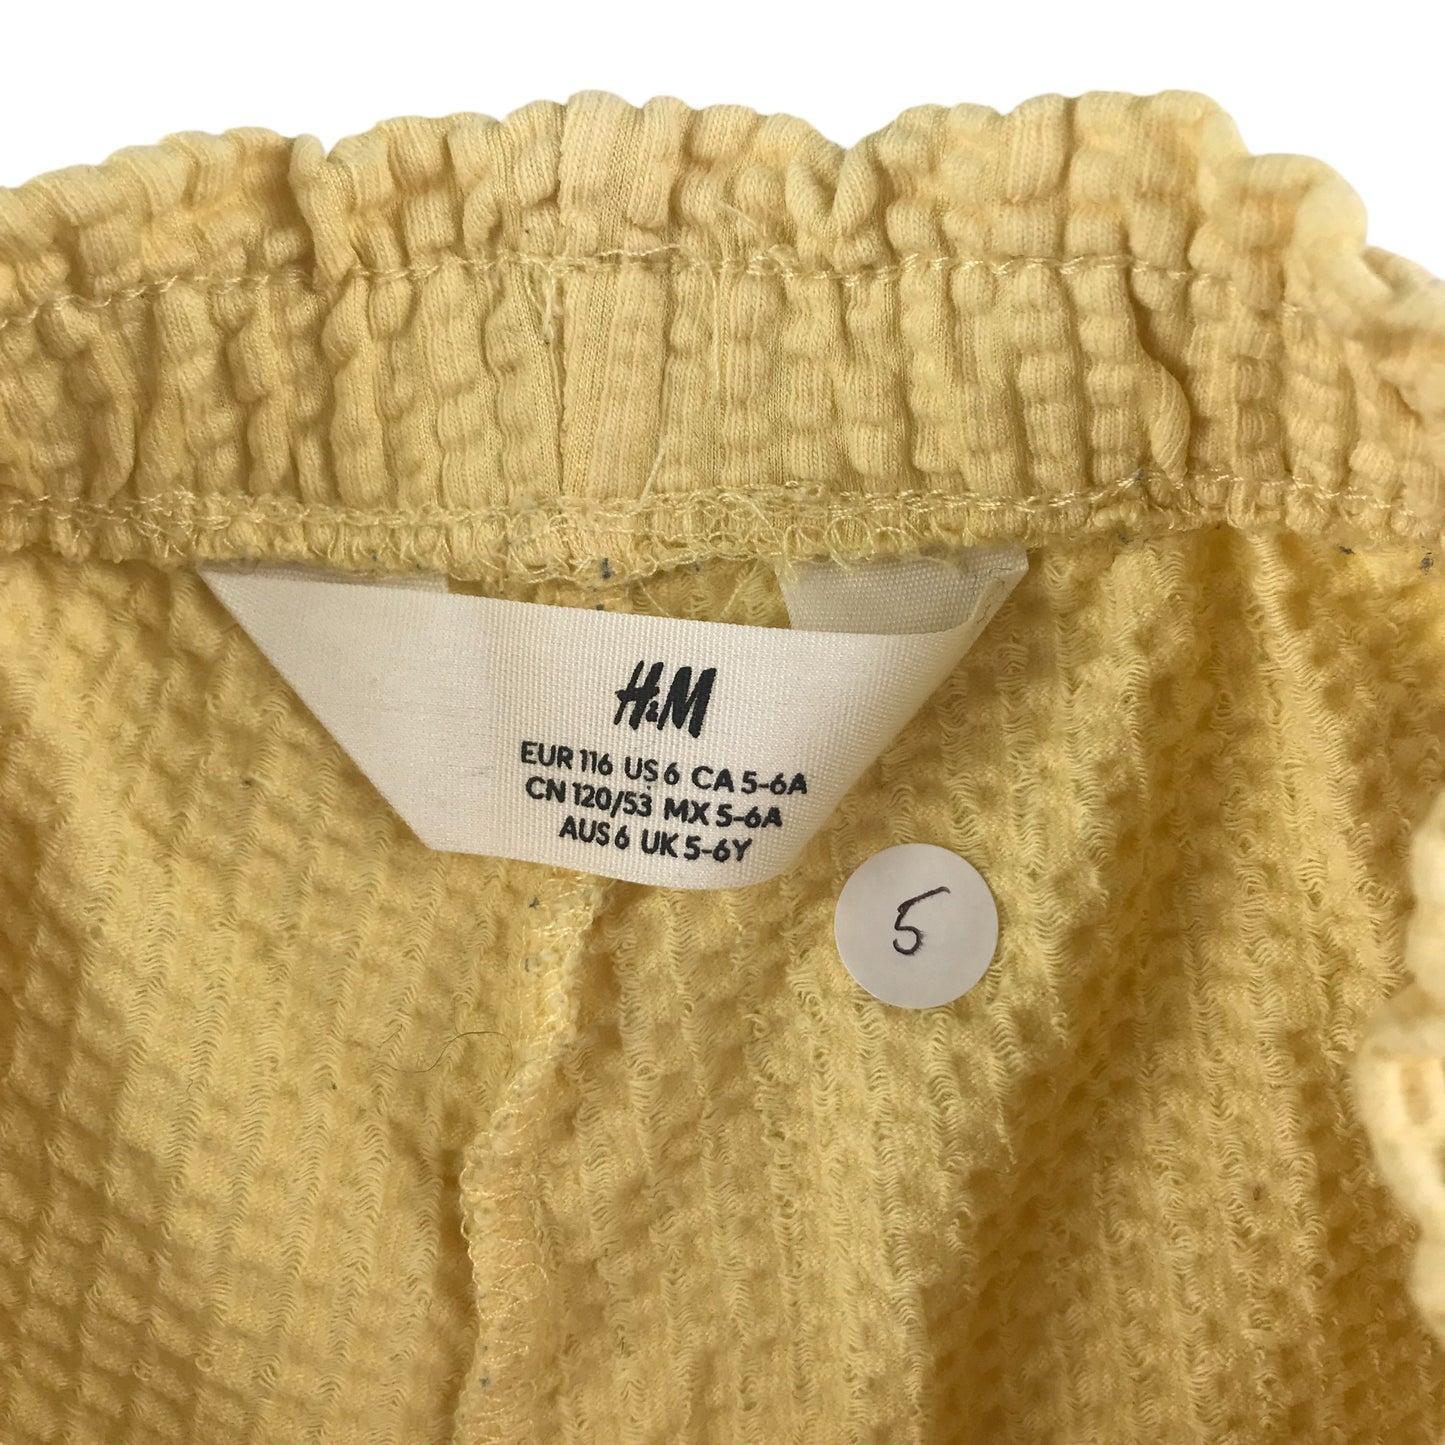 H&M Shorts Age 5 Yellow Waffle Style Elasticated Waist